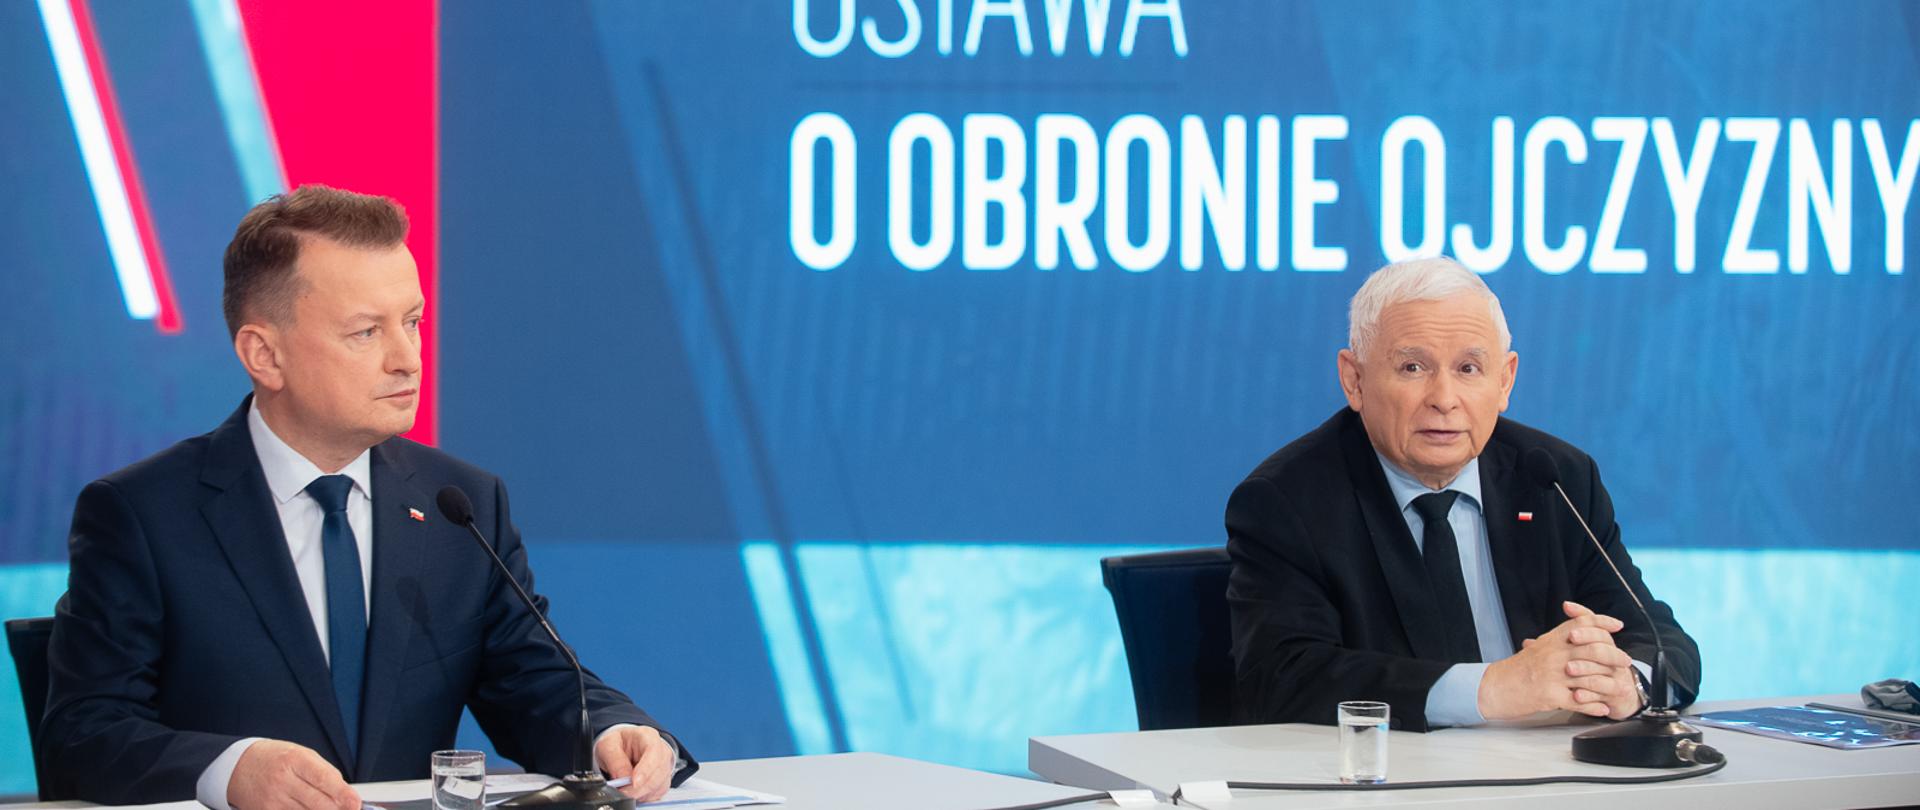 Wicepremier Jarosław Kaczyński i minister obrony narodowej Mariusz Błaszczak podczas konferencji prasowej.